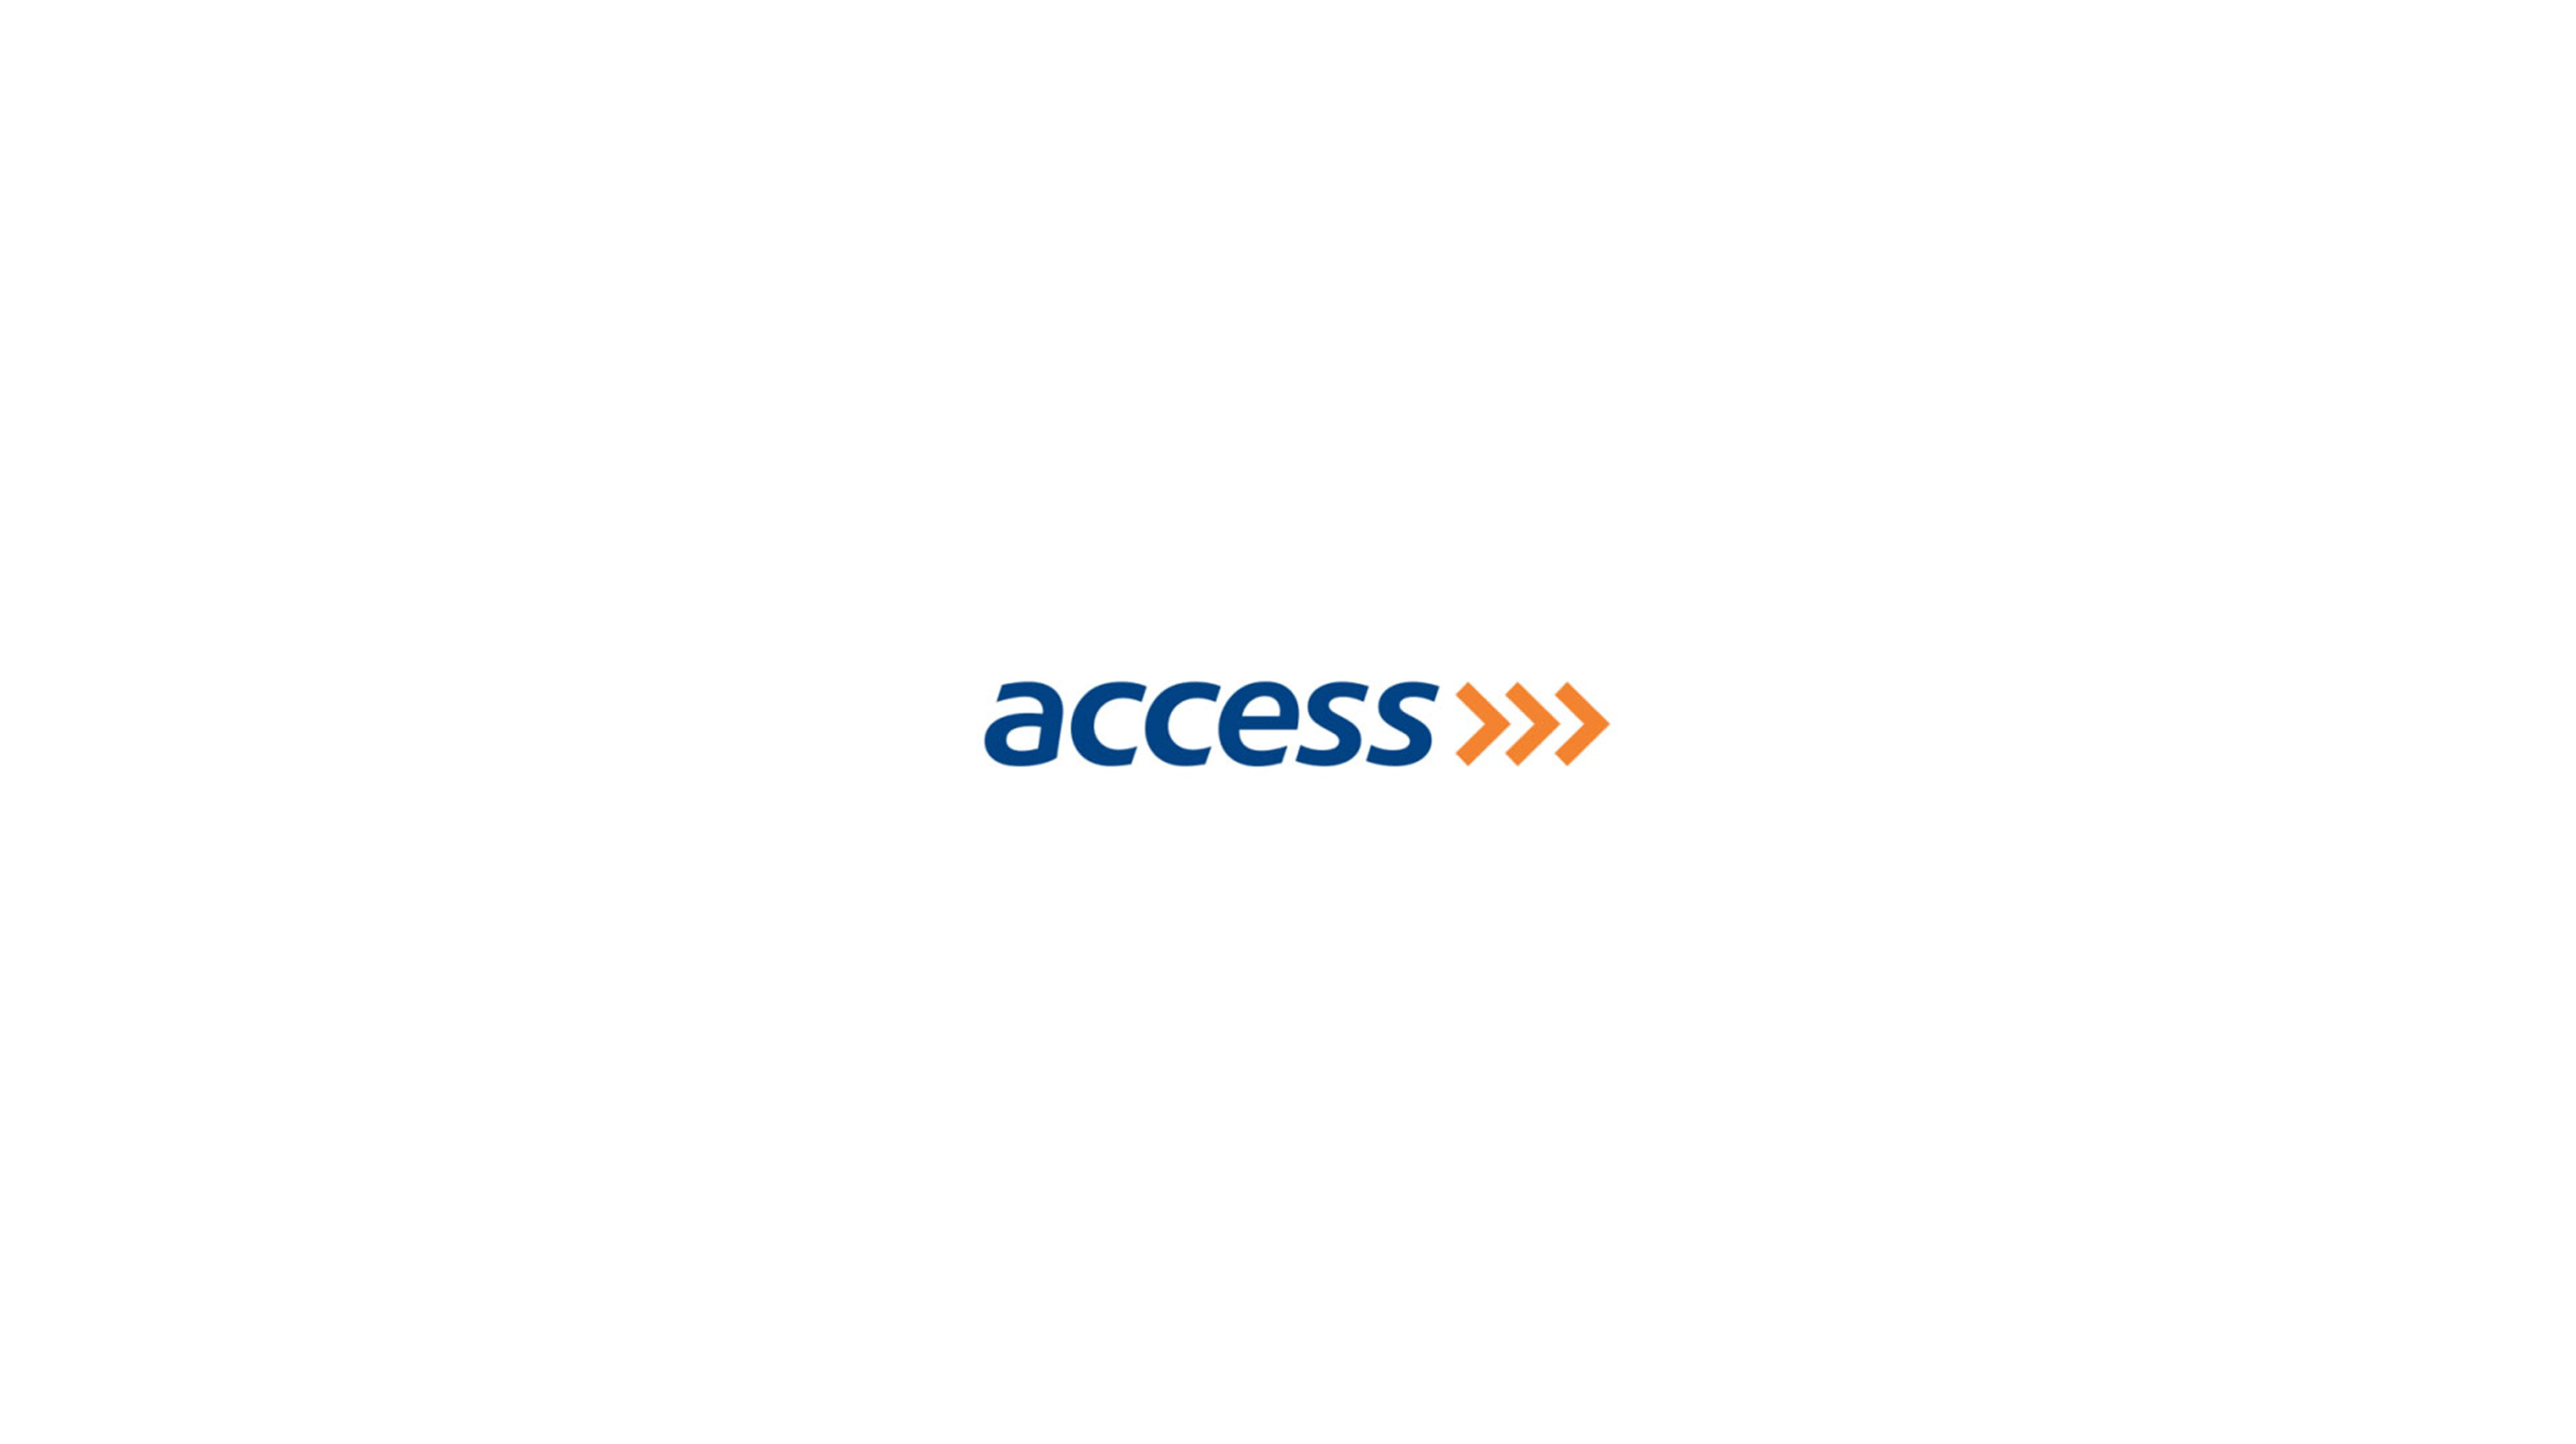 Access Bank's logo